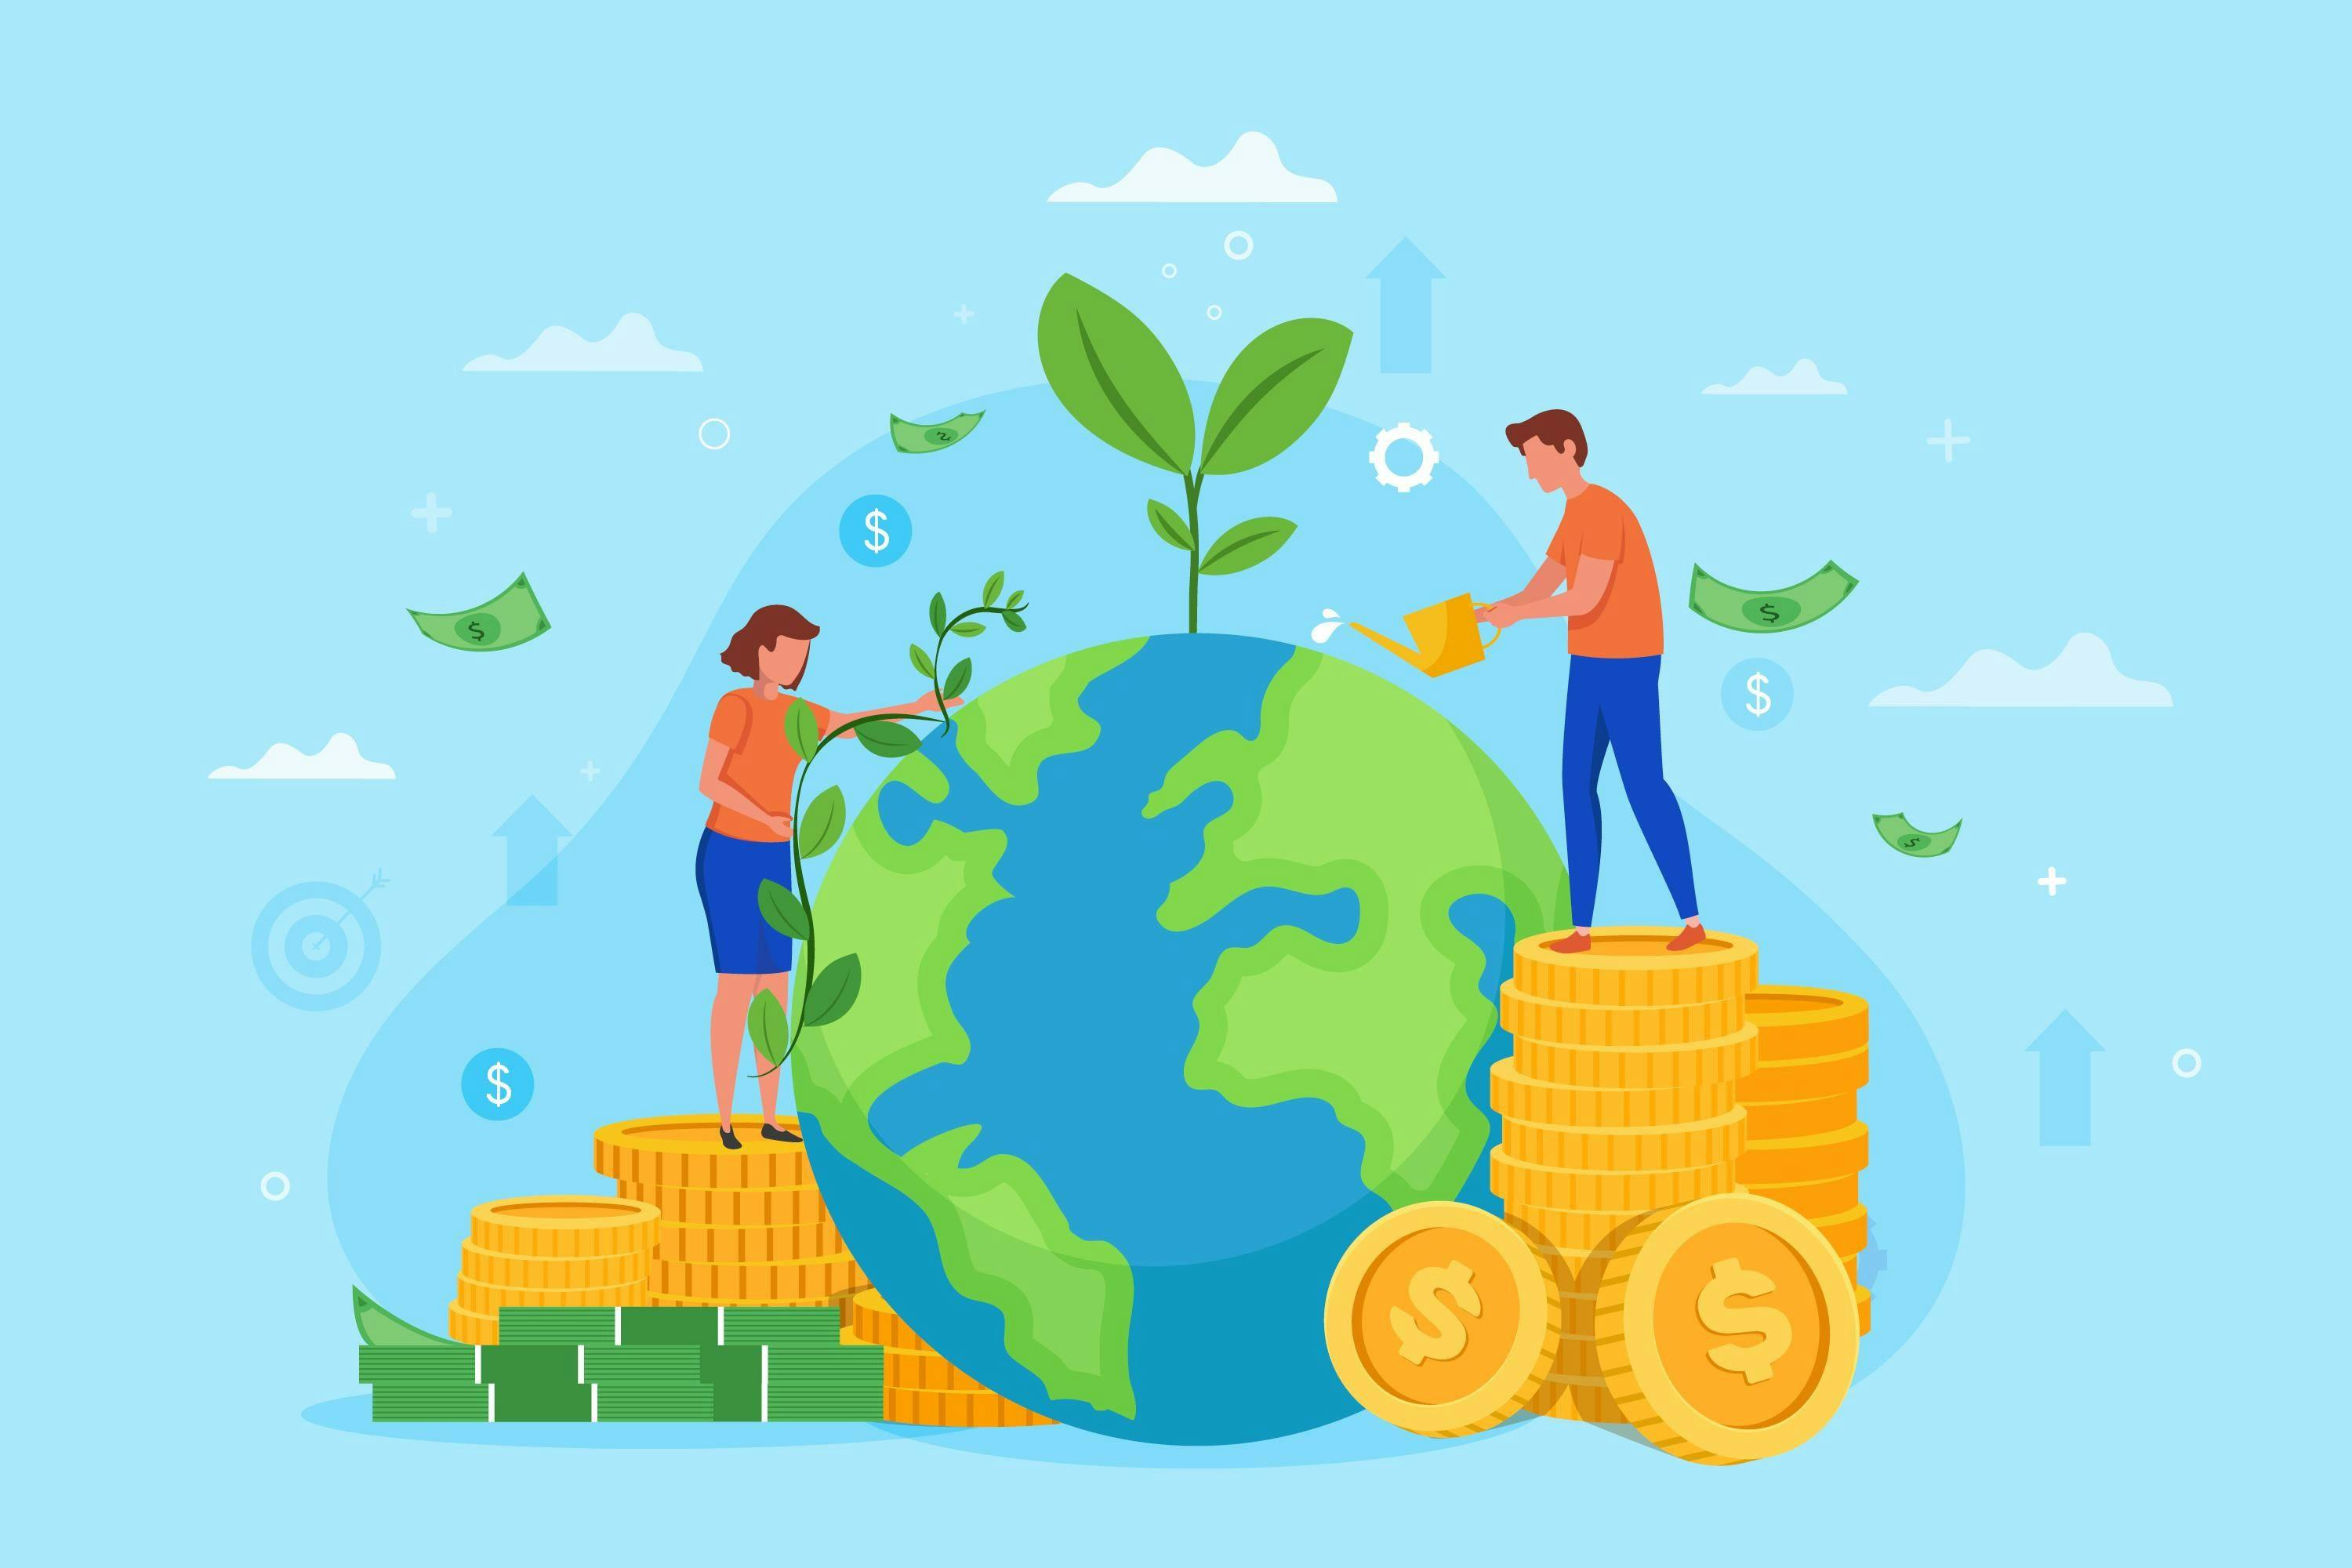 Sustainable finance, green bond